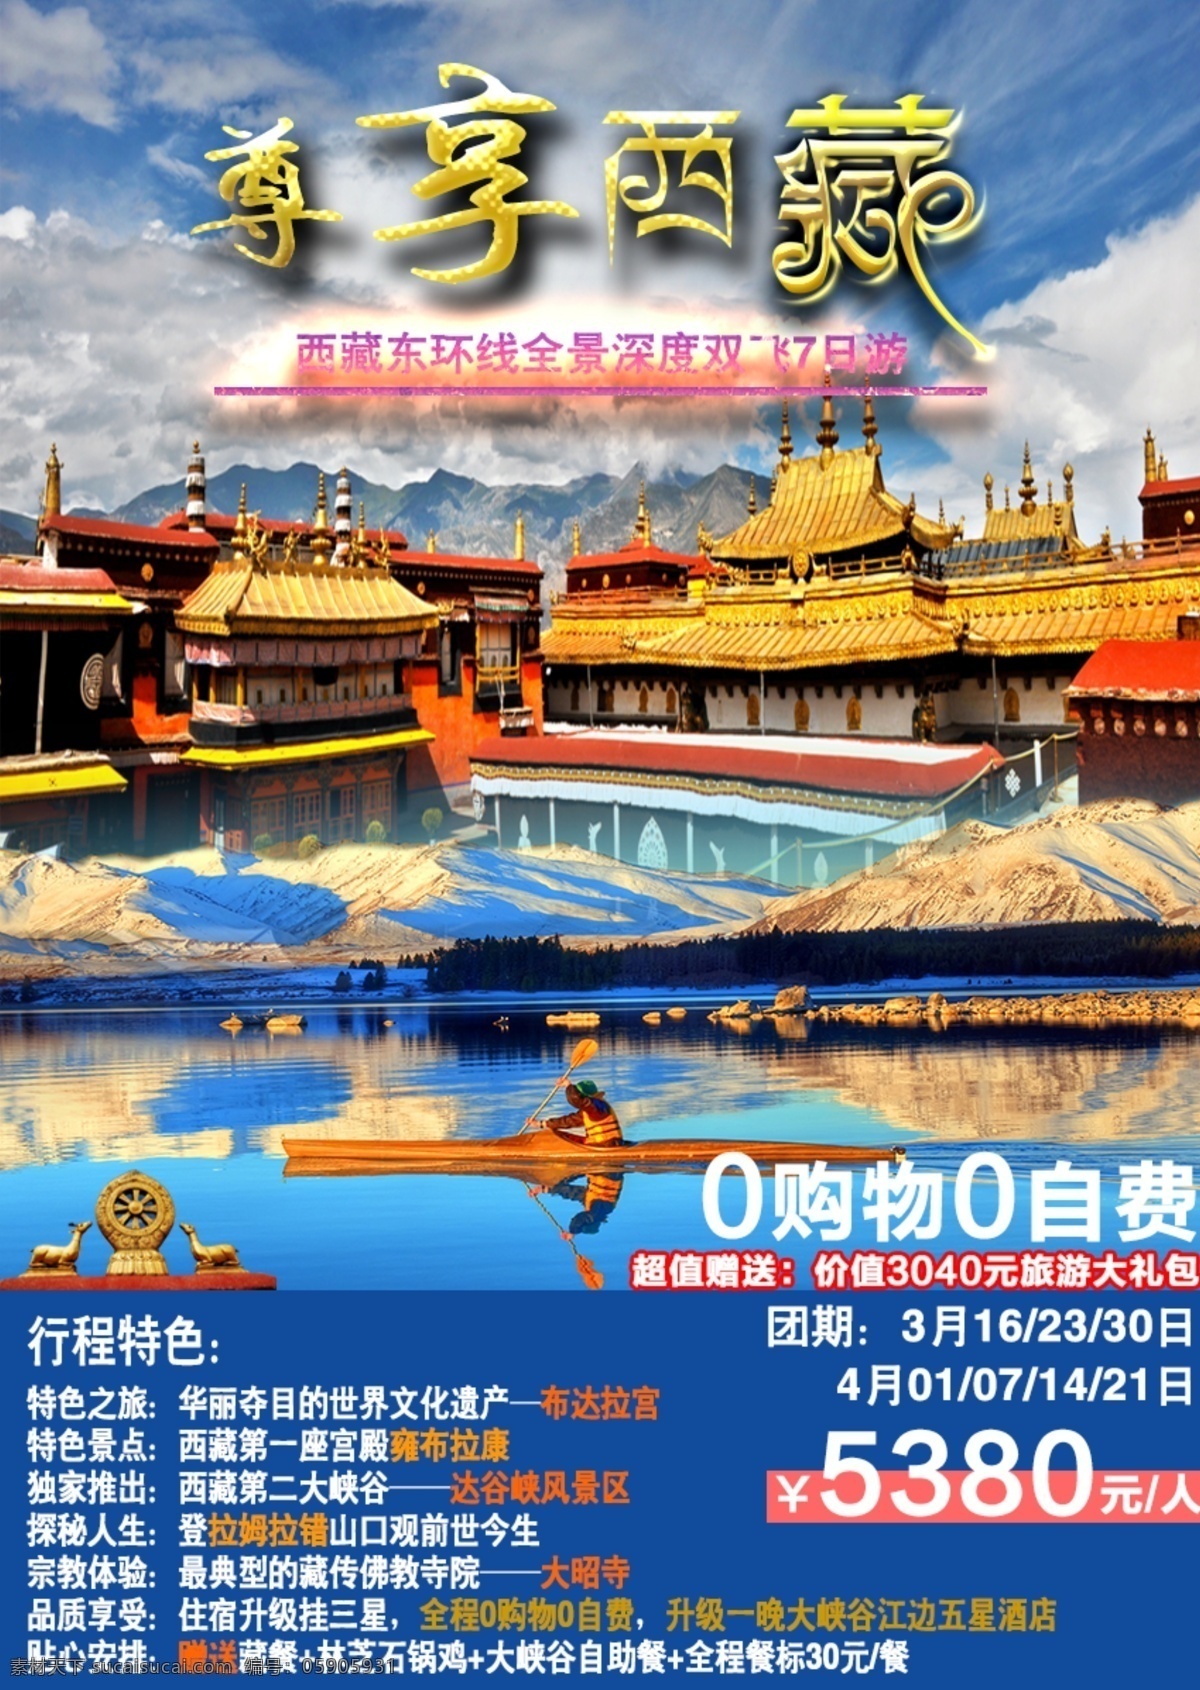 尊享西藏 西藏 旅游 广告 大昭寺 旅游广告